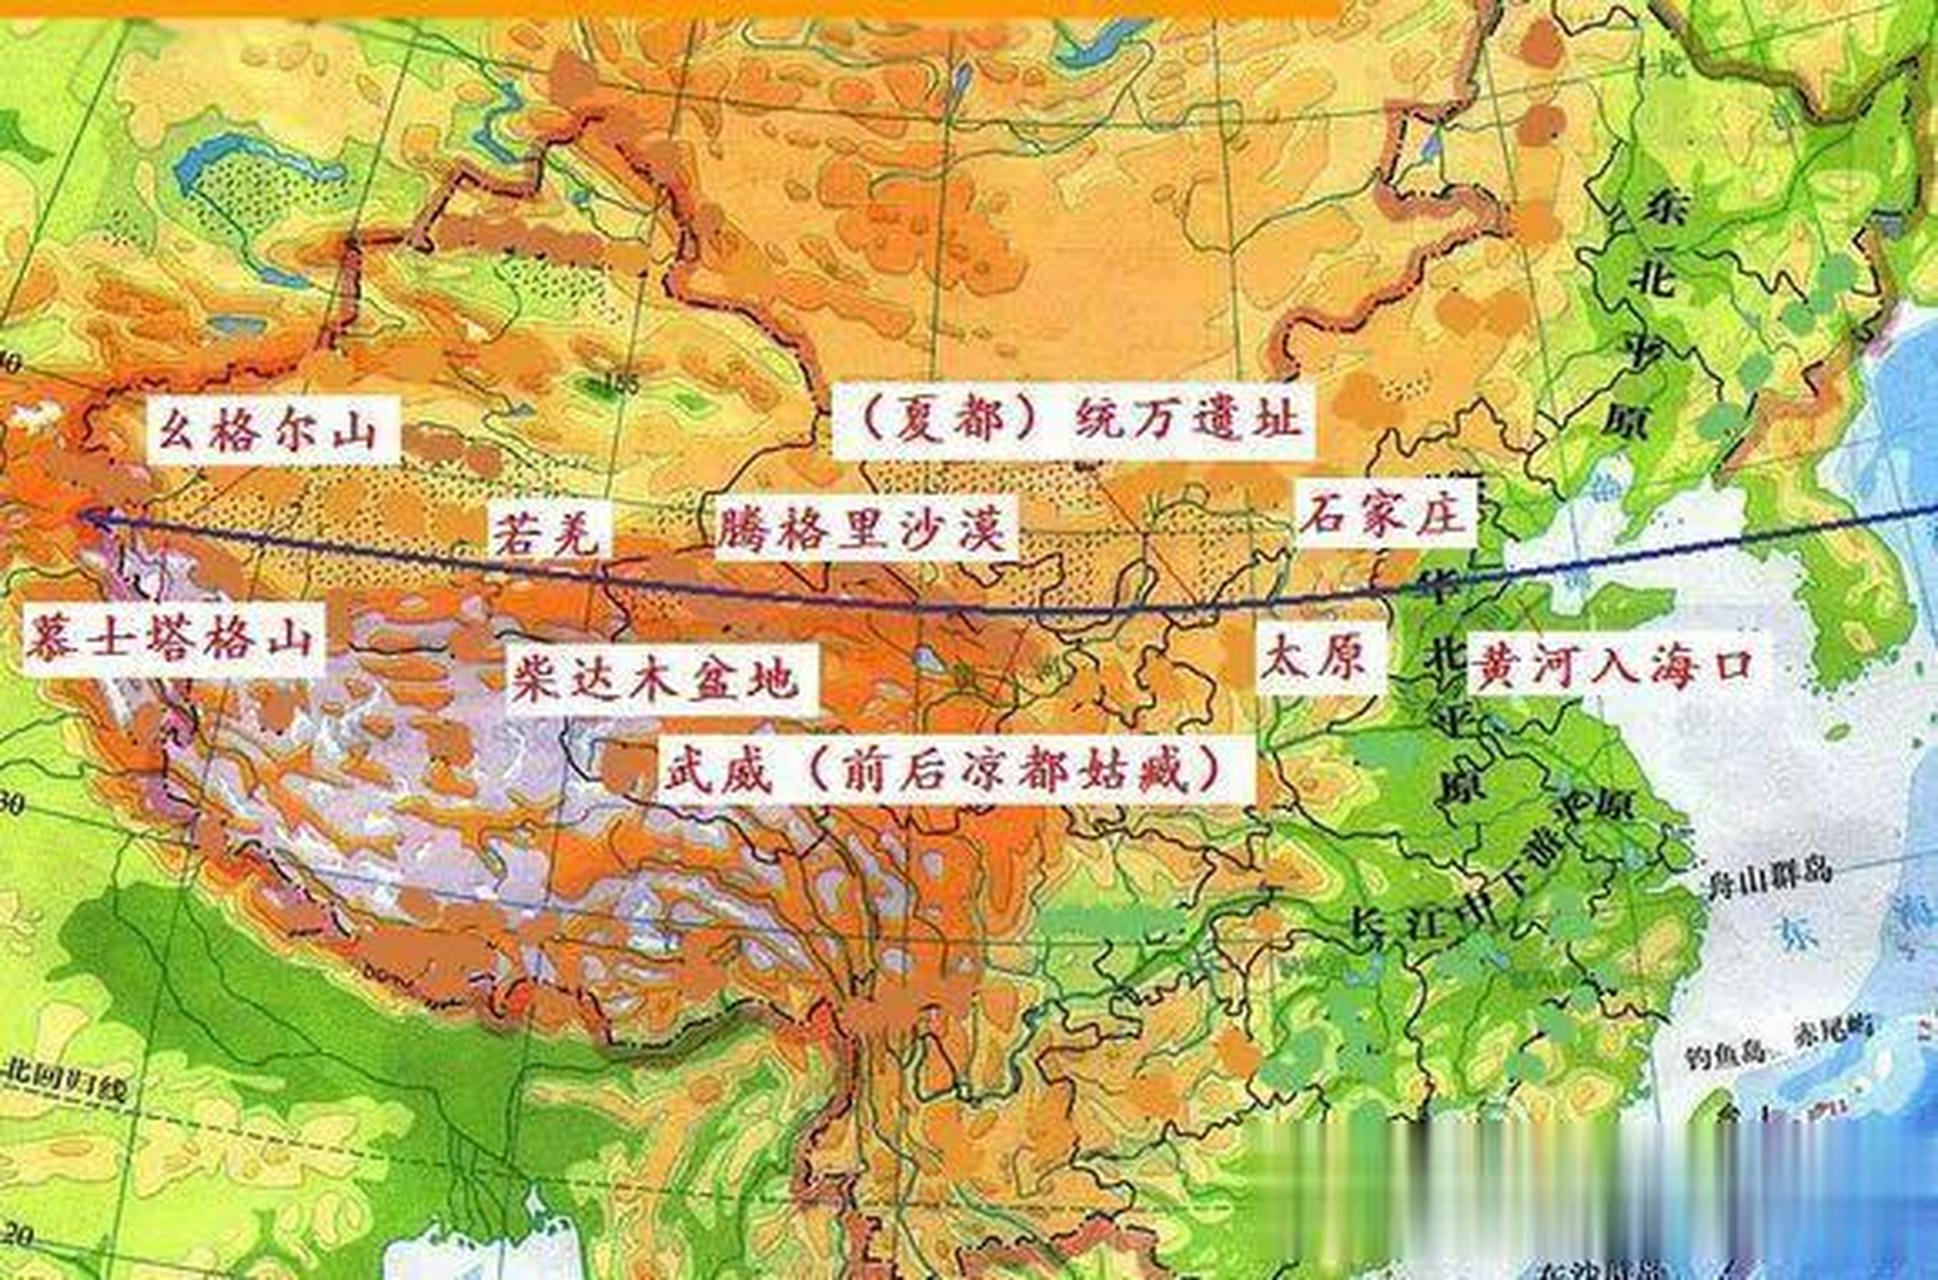 中国的三八线:看看著名的北纬38度纬线在中国都穿过了哪些地区:黄河入